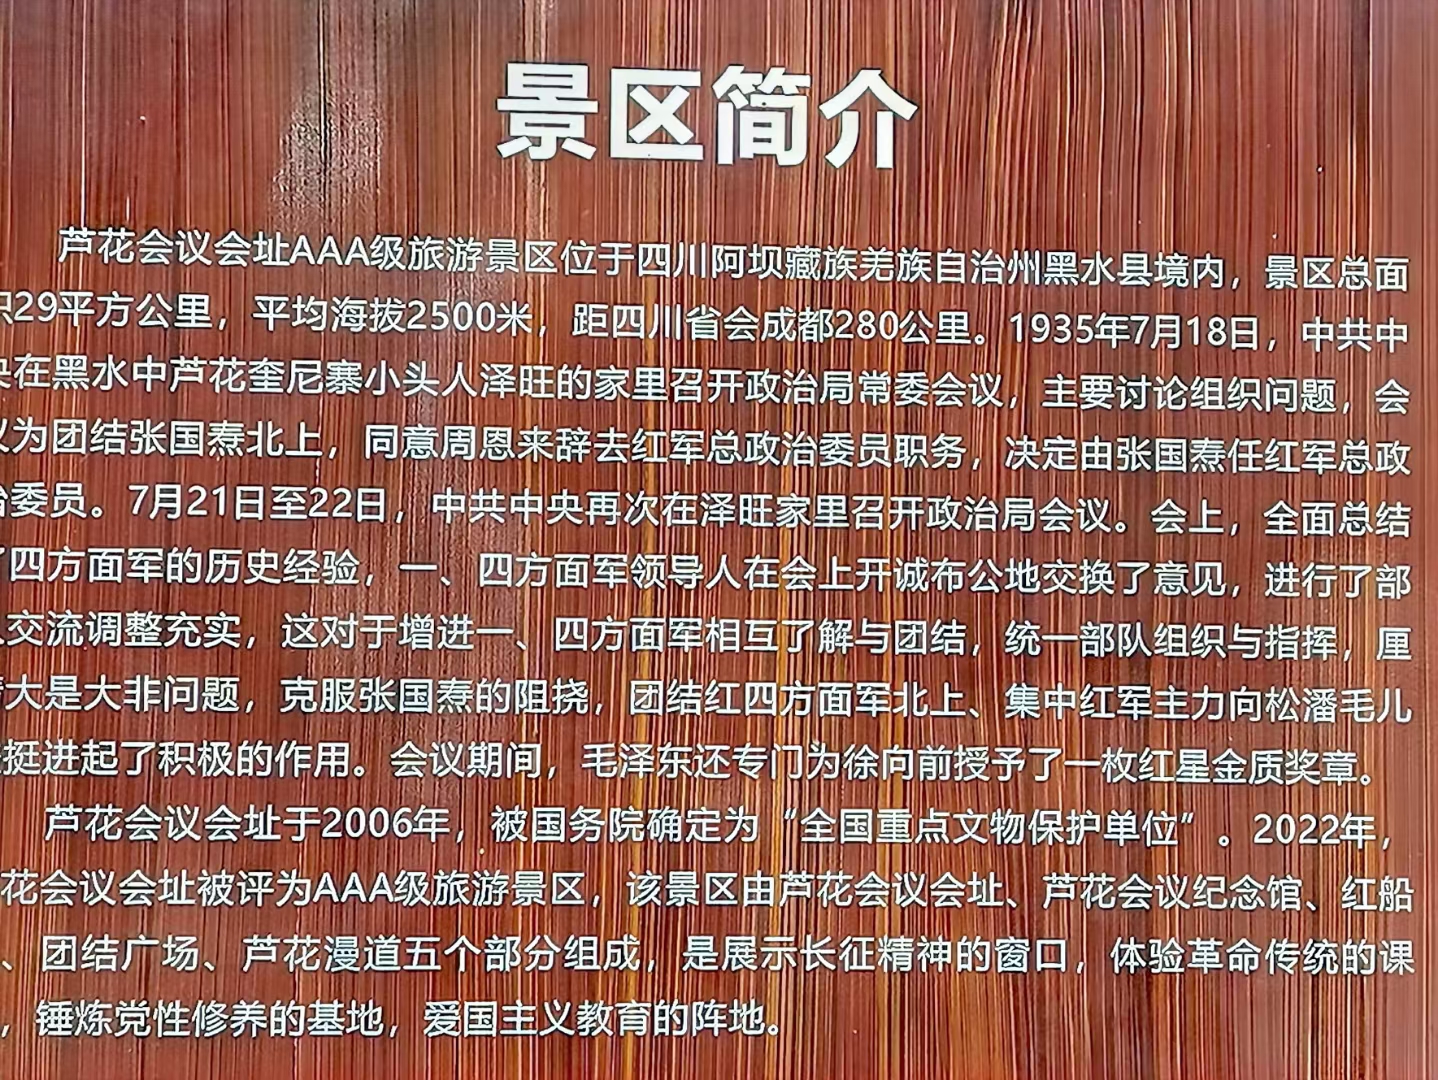 红军长征四川黑水芦花会议会址(图2)